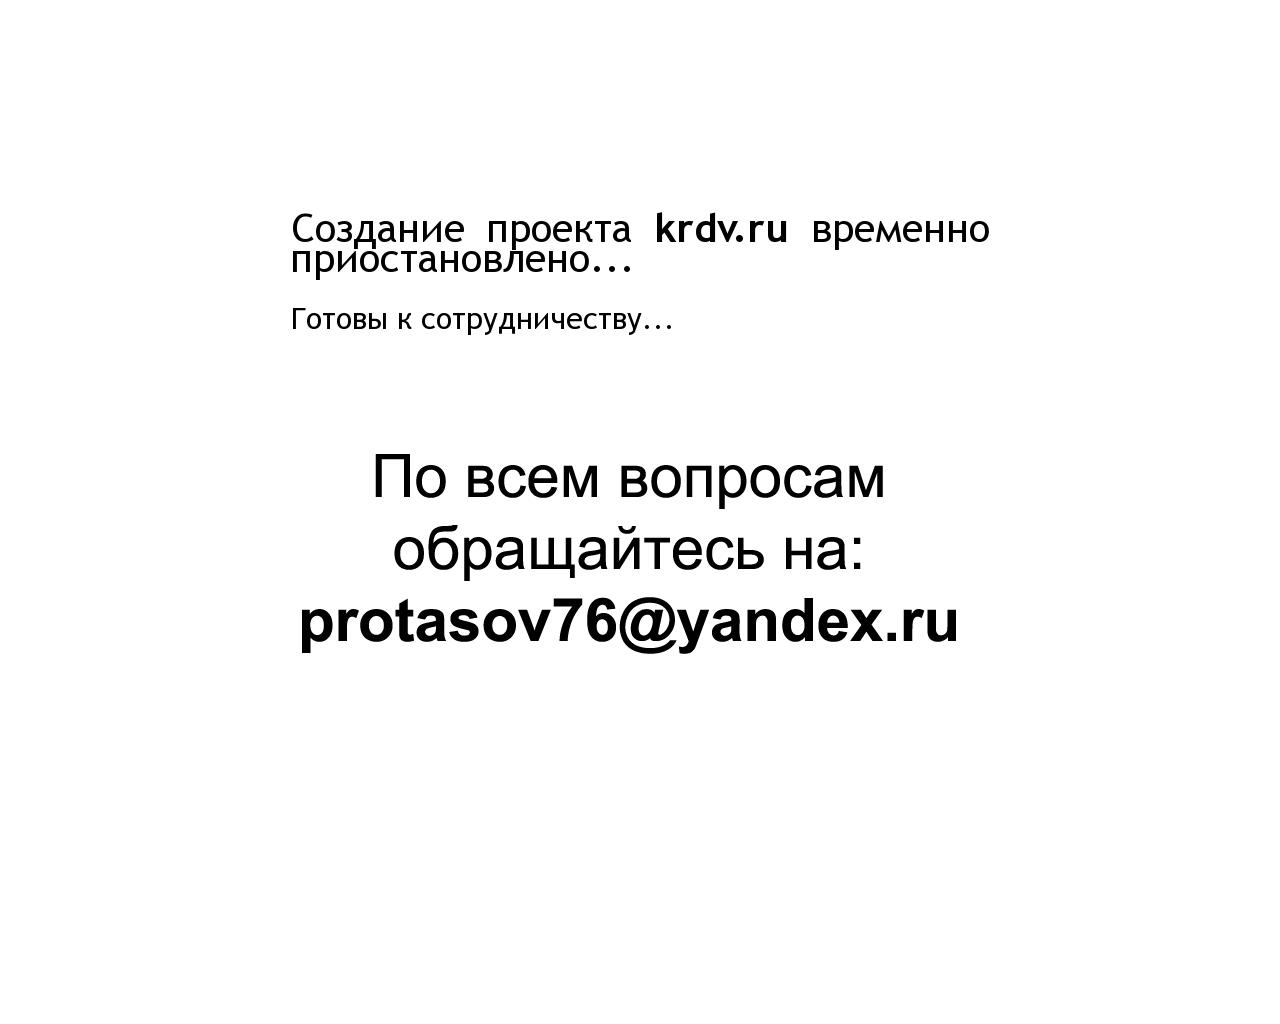 Изображение сайта krdv.ru в разрешении 1280x1024